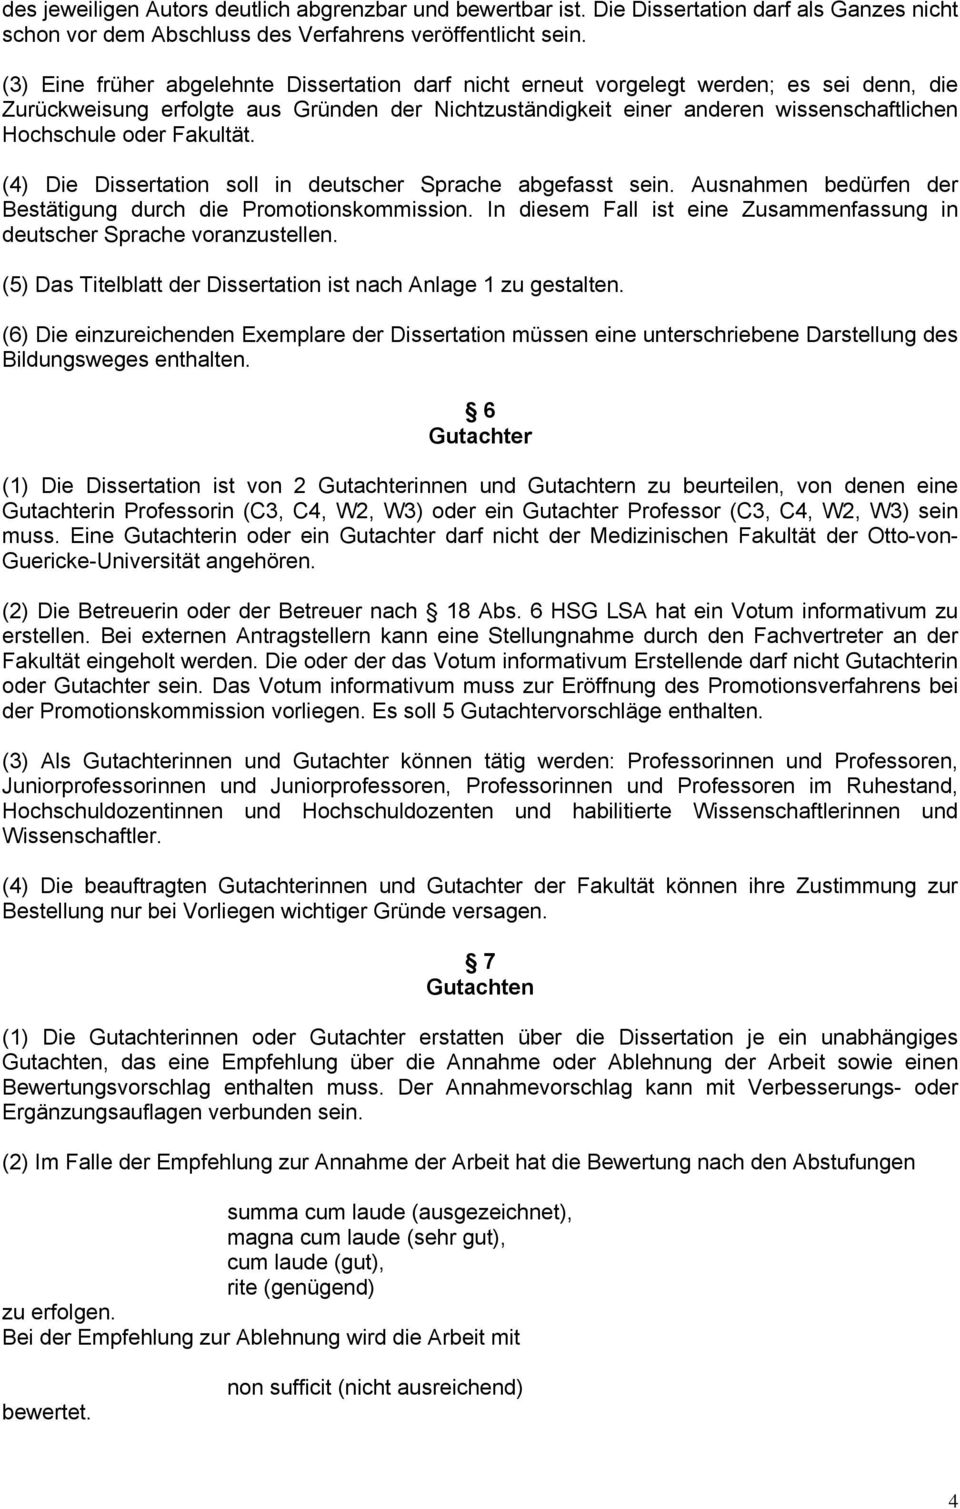 Fakultät. (4) Die Dissertation soll in deutscher Sprache abgefasst sein. Ausnahmen bedürfen der Bestätigung durch die Promotionskommission.